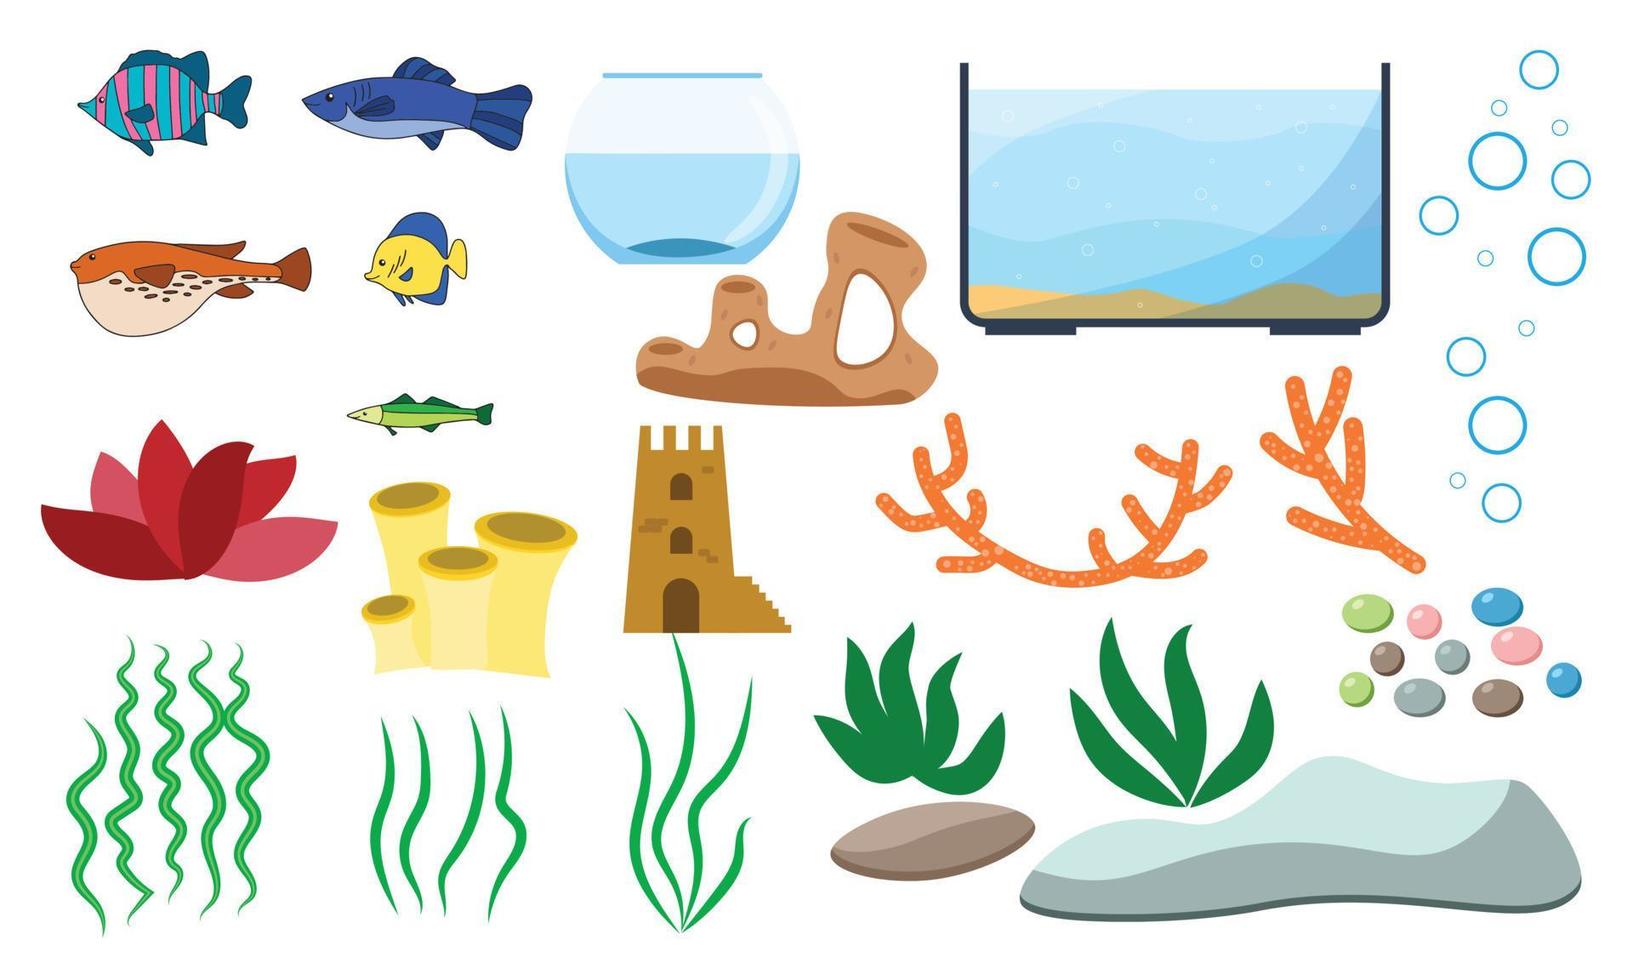 akvarium undervattens vektorelement isolerad på vit bakgrund. akvaristik tecknad serie med akvariefiskar stenar sjögräs snäckskal och akvarietankar av olika former. vektor